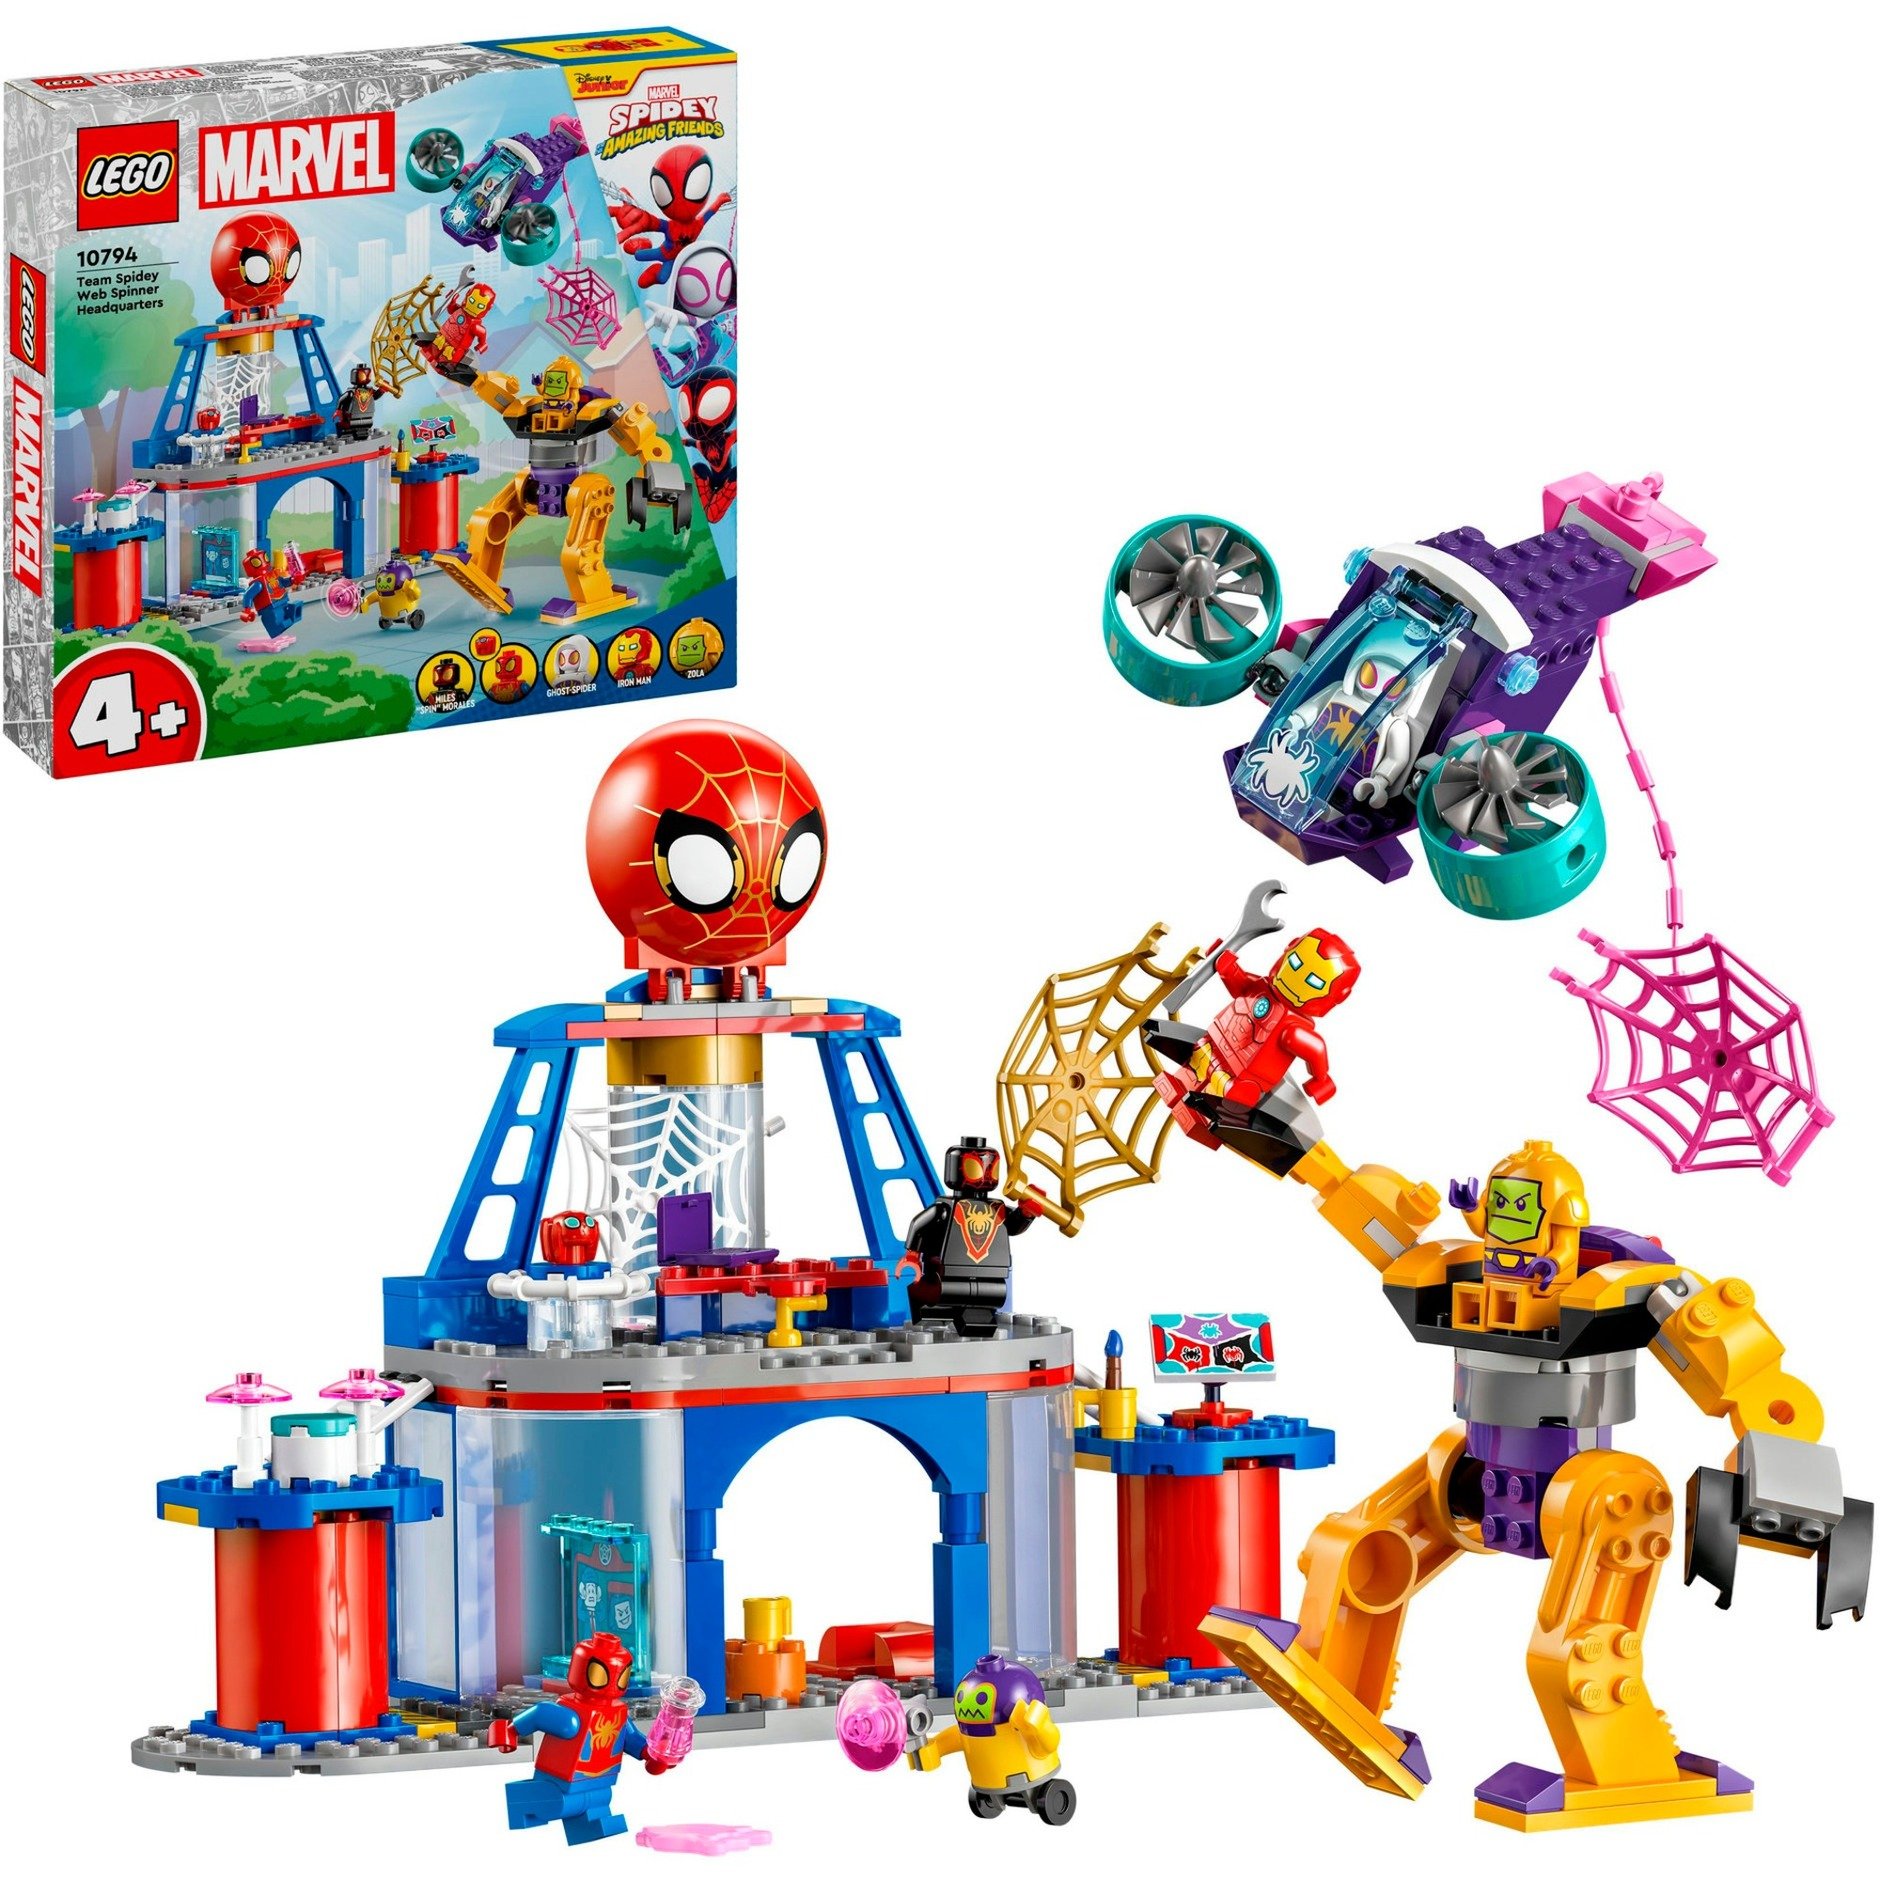 10794 Marvel Spidey und seine Super-Freunde Das Hauptquartier von Spideys Team, Konstruktionsspielzeug